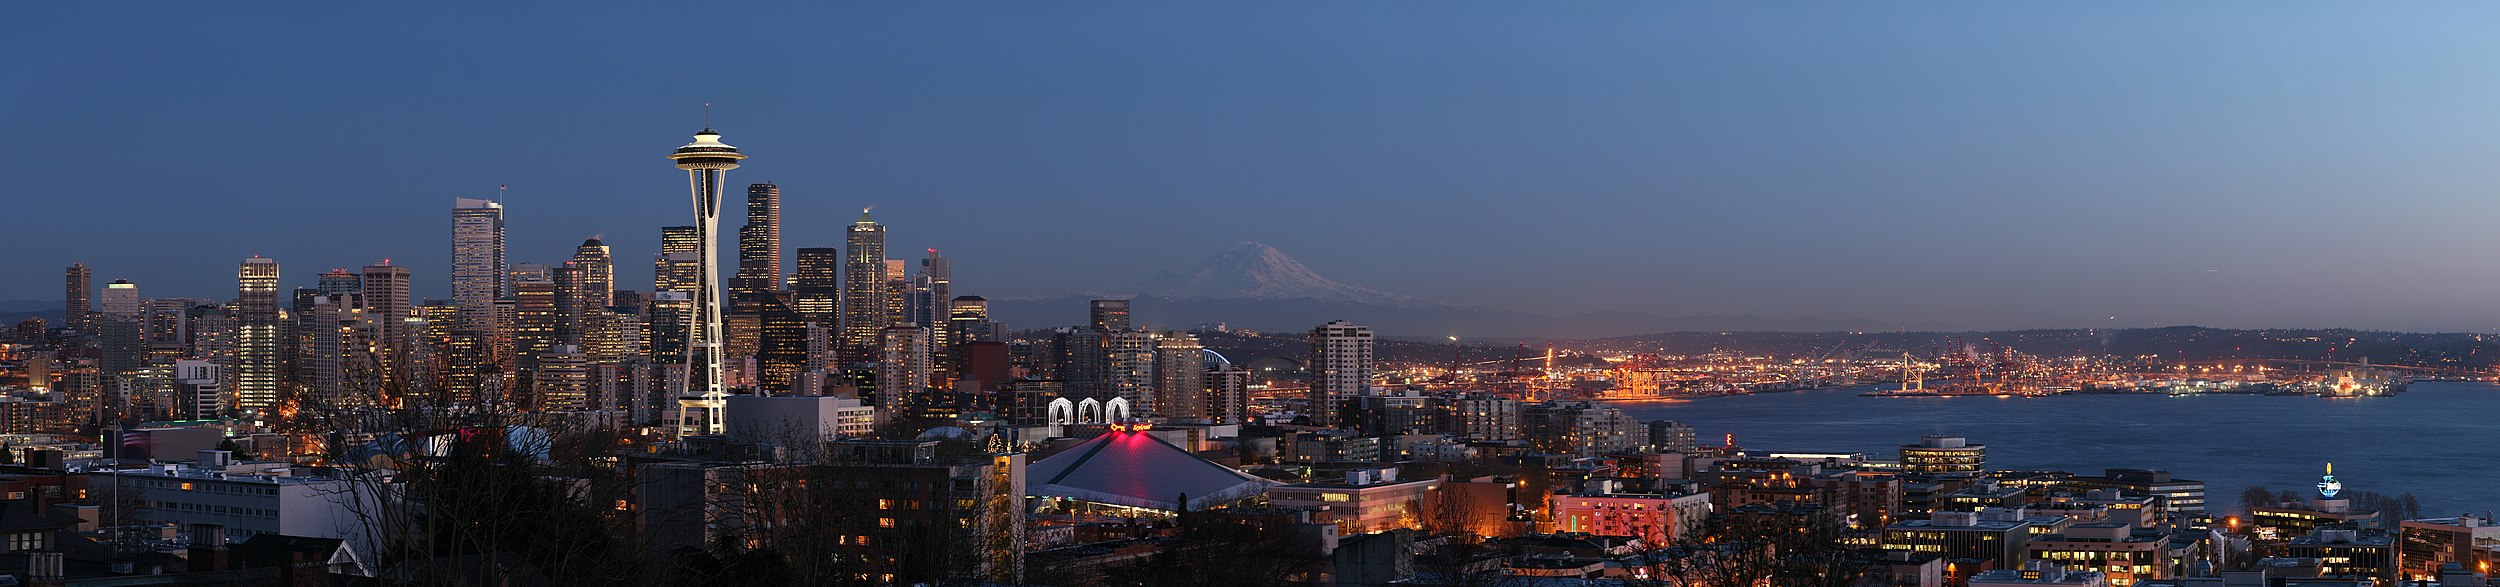 Seattle'i öine panoraam